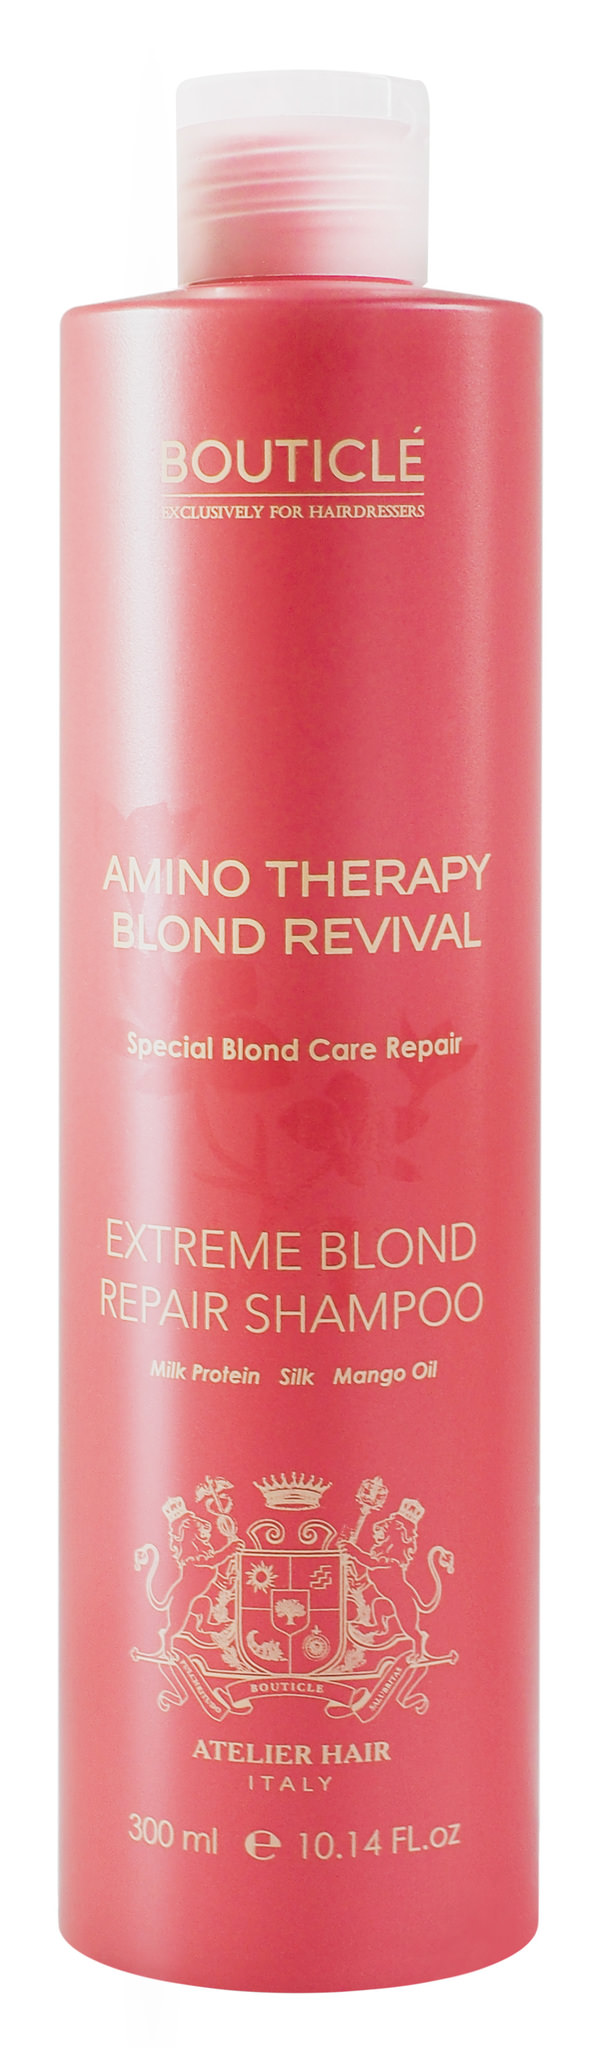 фото Bouticle Шампунь для экстремально поврежденных осветленных волос “Extreme Blond Repair Shampoo" 300 мл, 3106025 